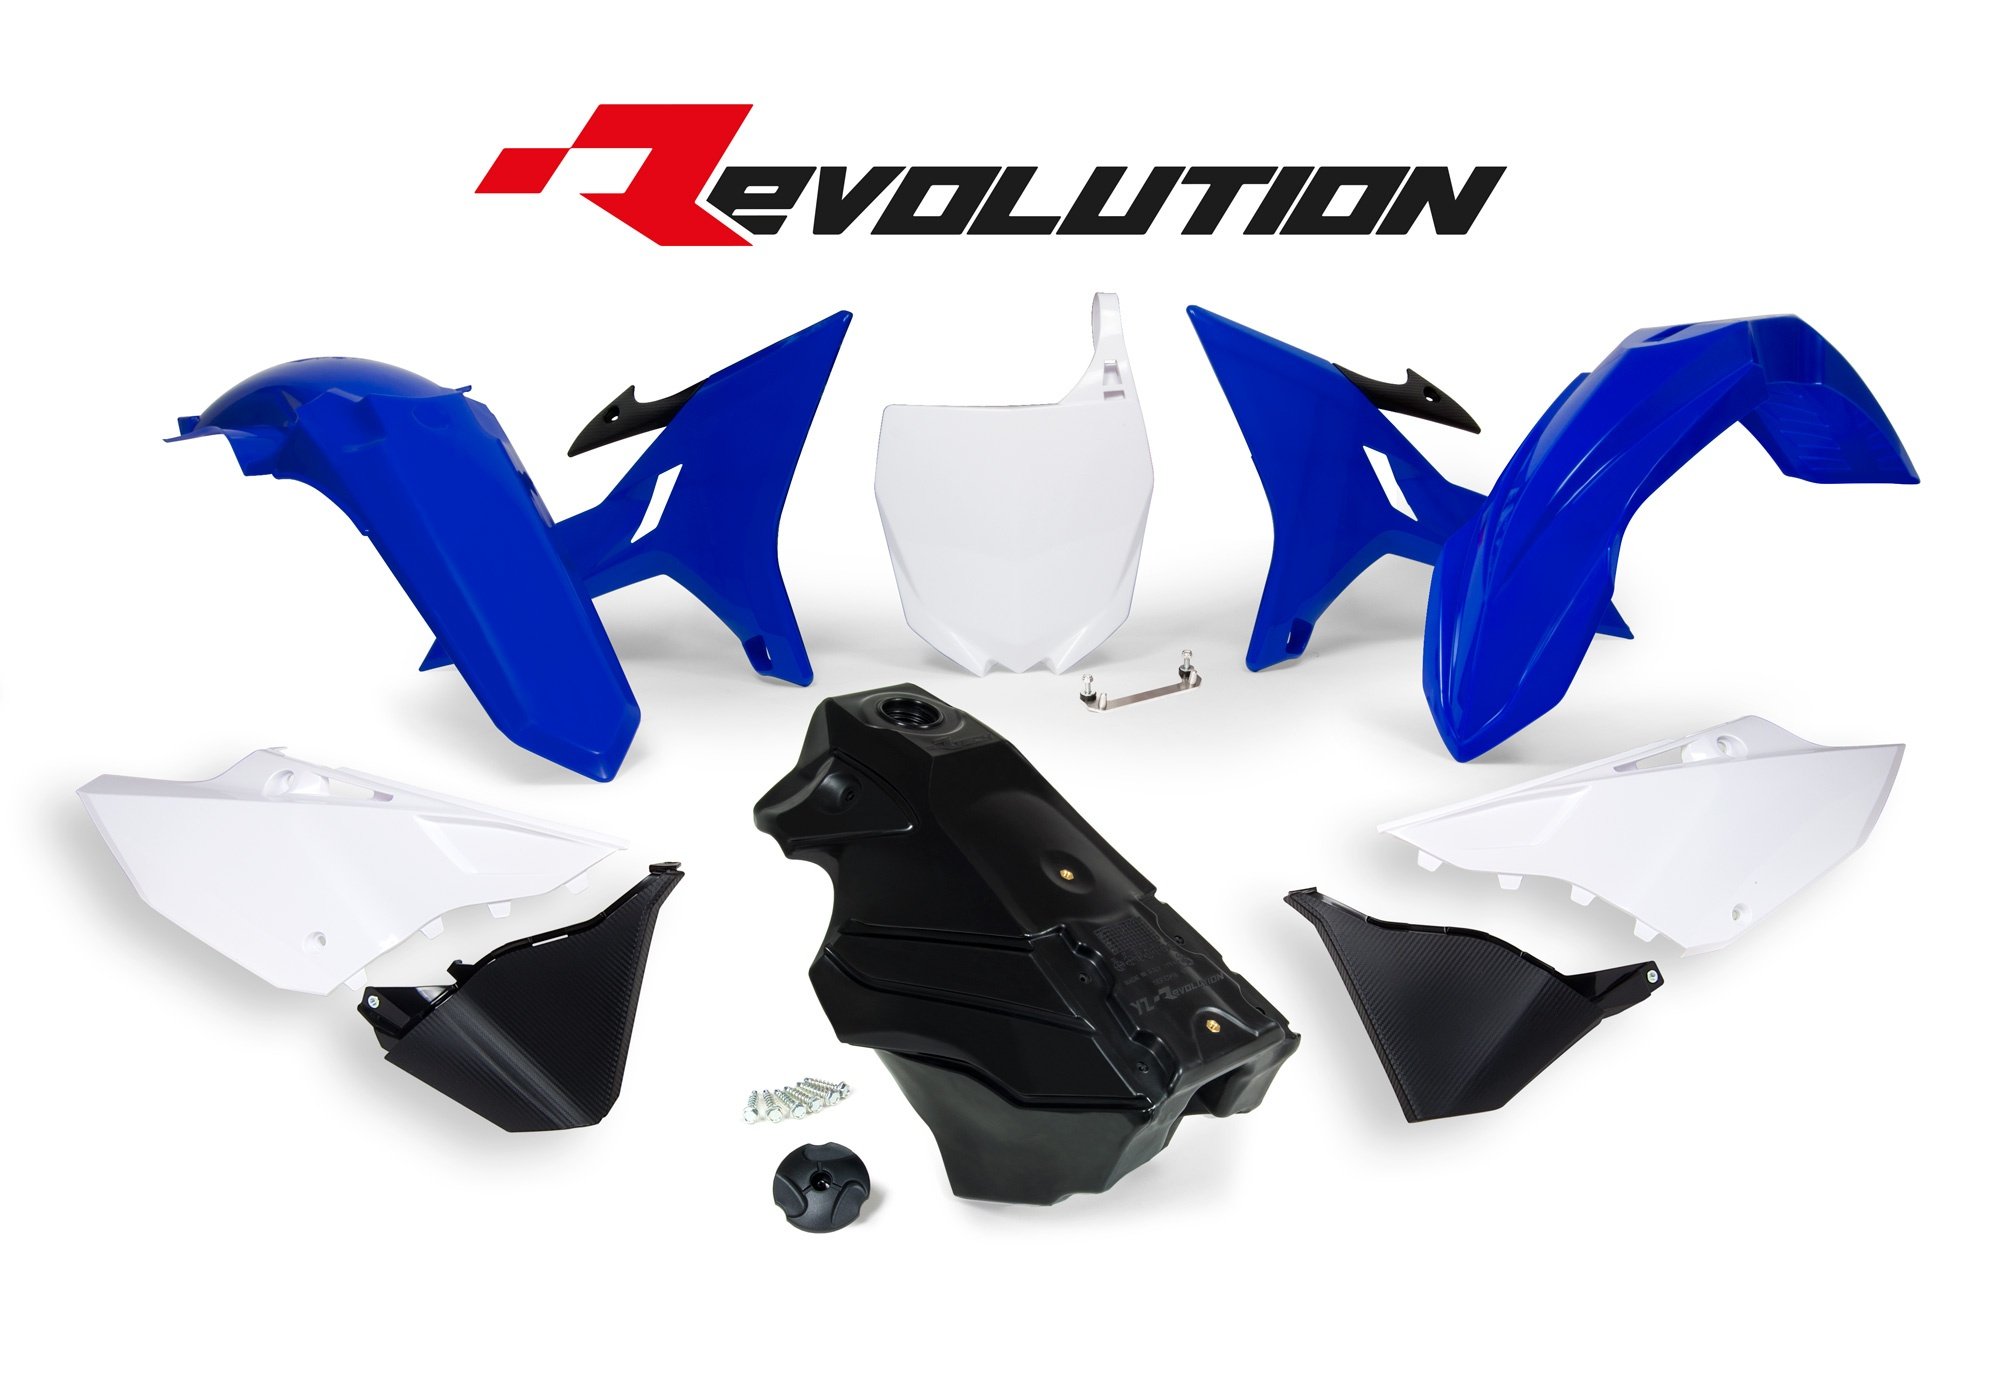 Obrázek produktu sada plastů Yamaha - REVOLUTION KIT pro YZ 125/250 02-21, RTECH (modro-bílo-černá, 7 dílů)